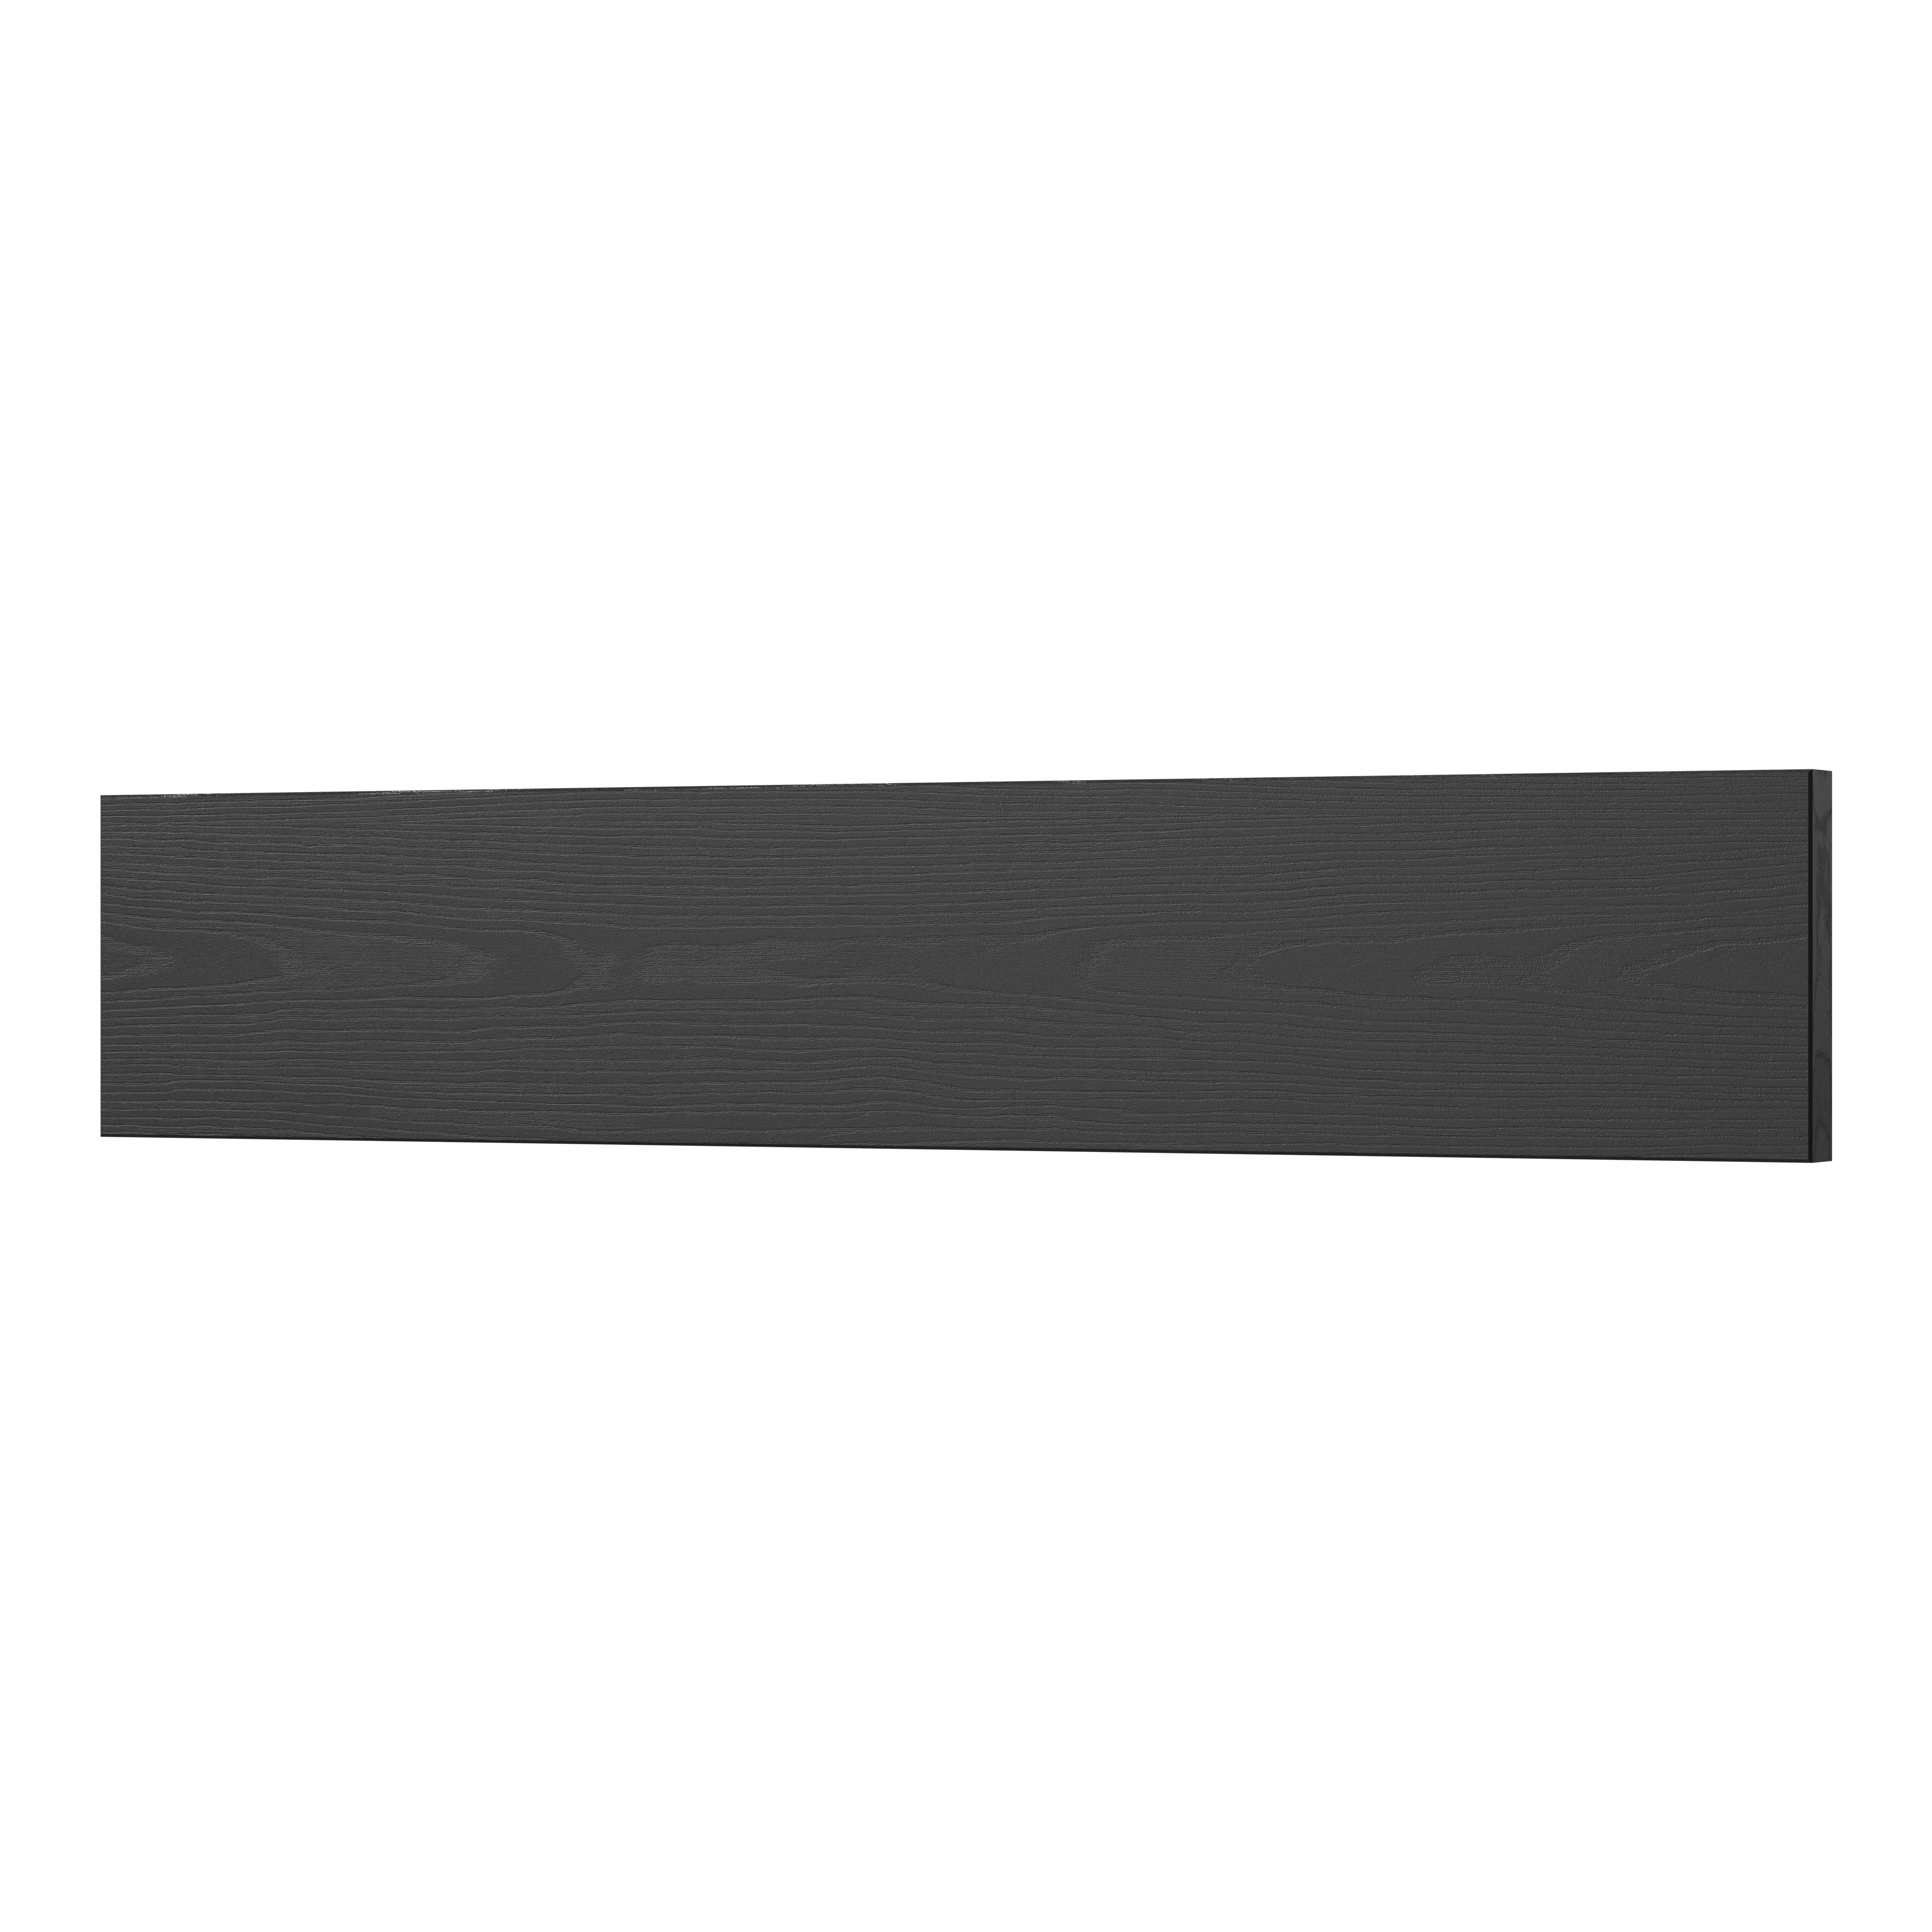 GoodHome Verbena Matt charcoal shaker Standard Appliance Filler panel (H)115mm (W)597mm